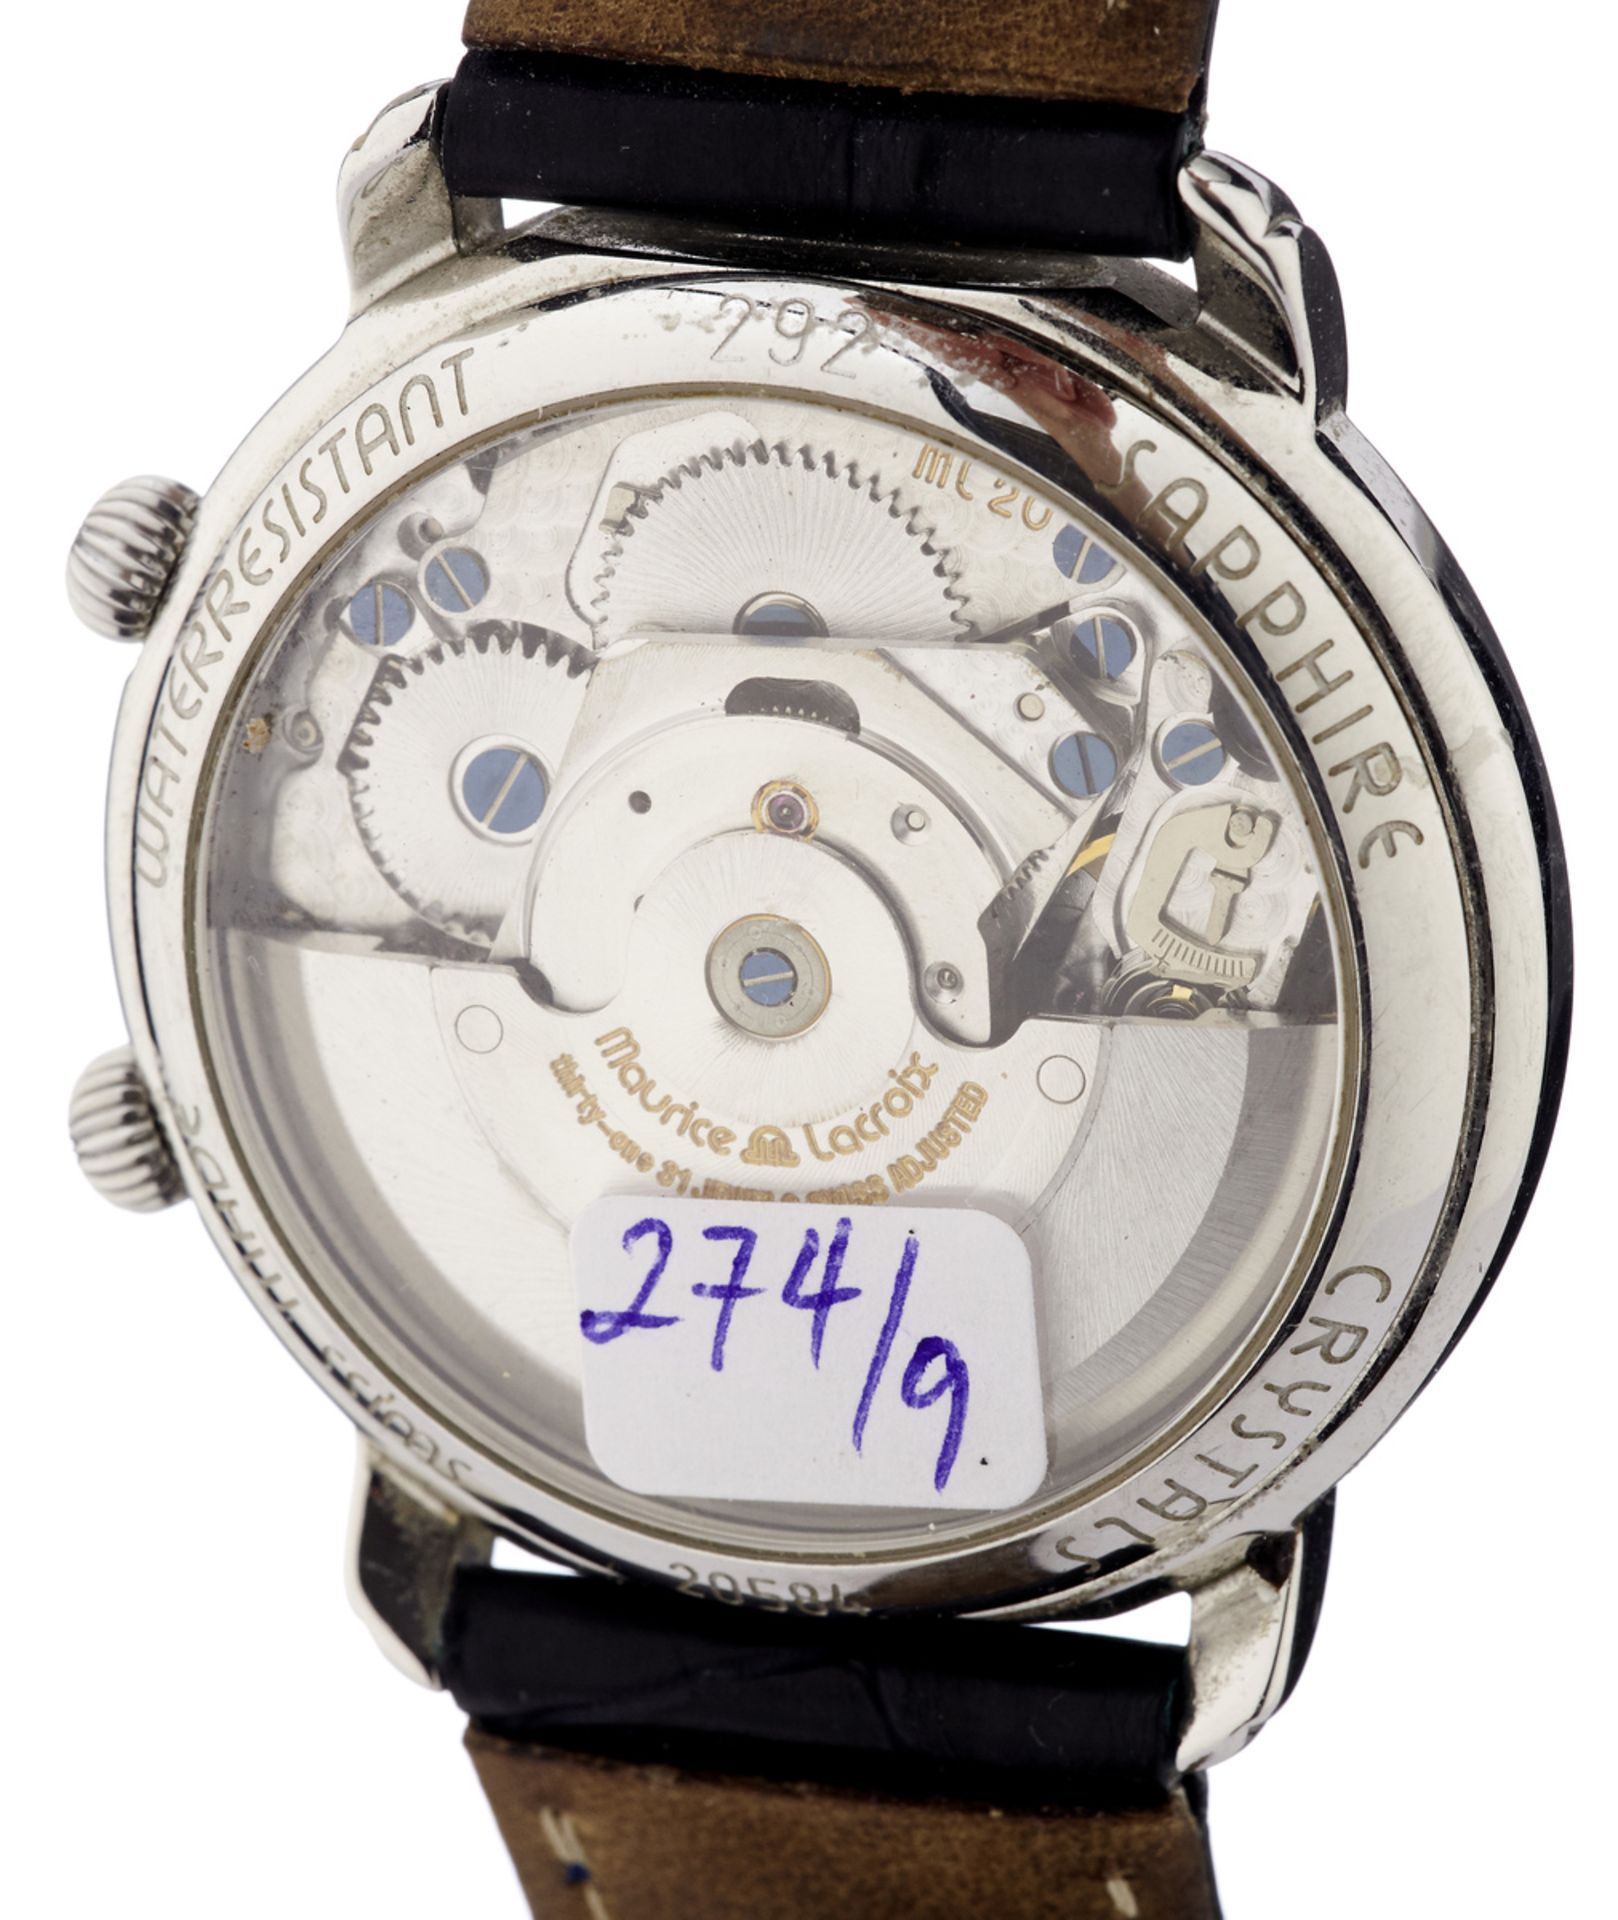 Armbanduhr "Maurice Lacroix"Stahlgehäuse mit Sichtboden. Silberfarbenes, guillochiertes - Bild 2 aus 4